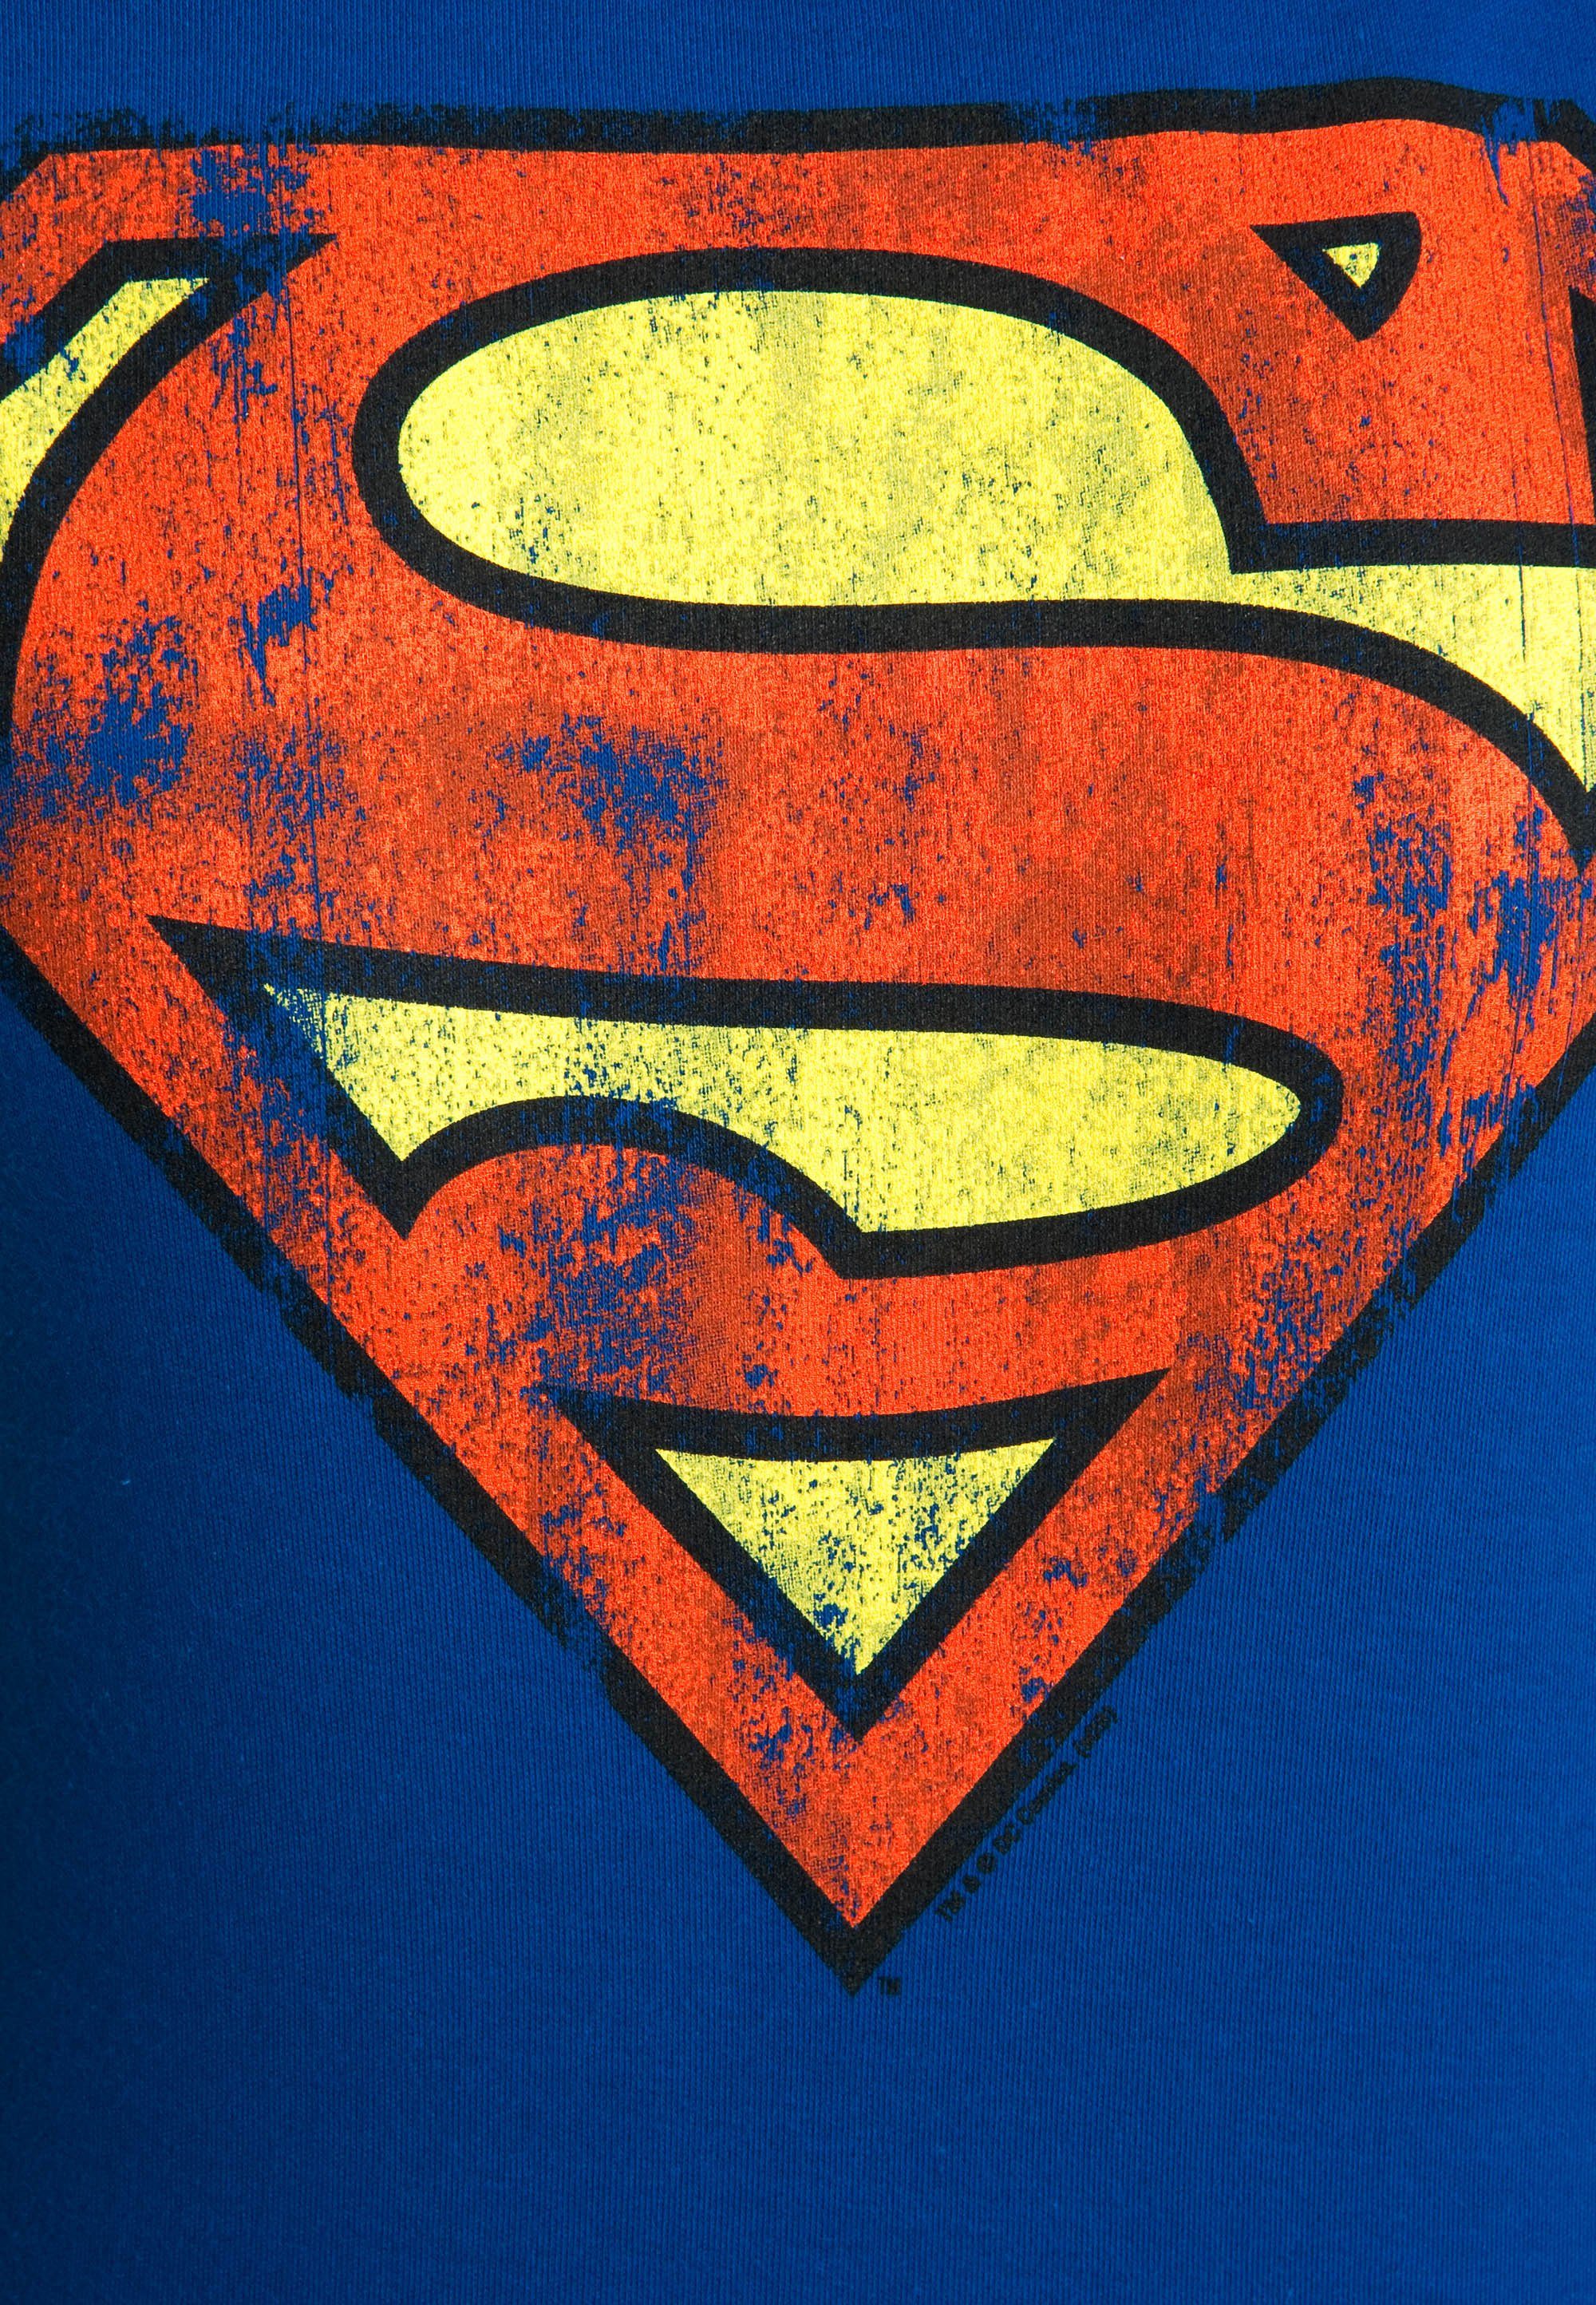 Superman-Logo T-Shirt lizenzierten LOGOSHIRT mit Originaldesign